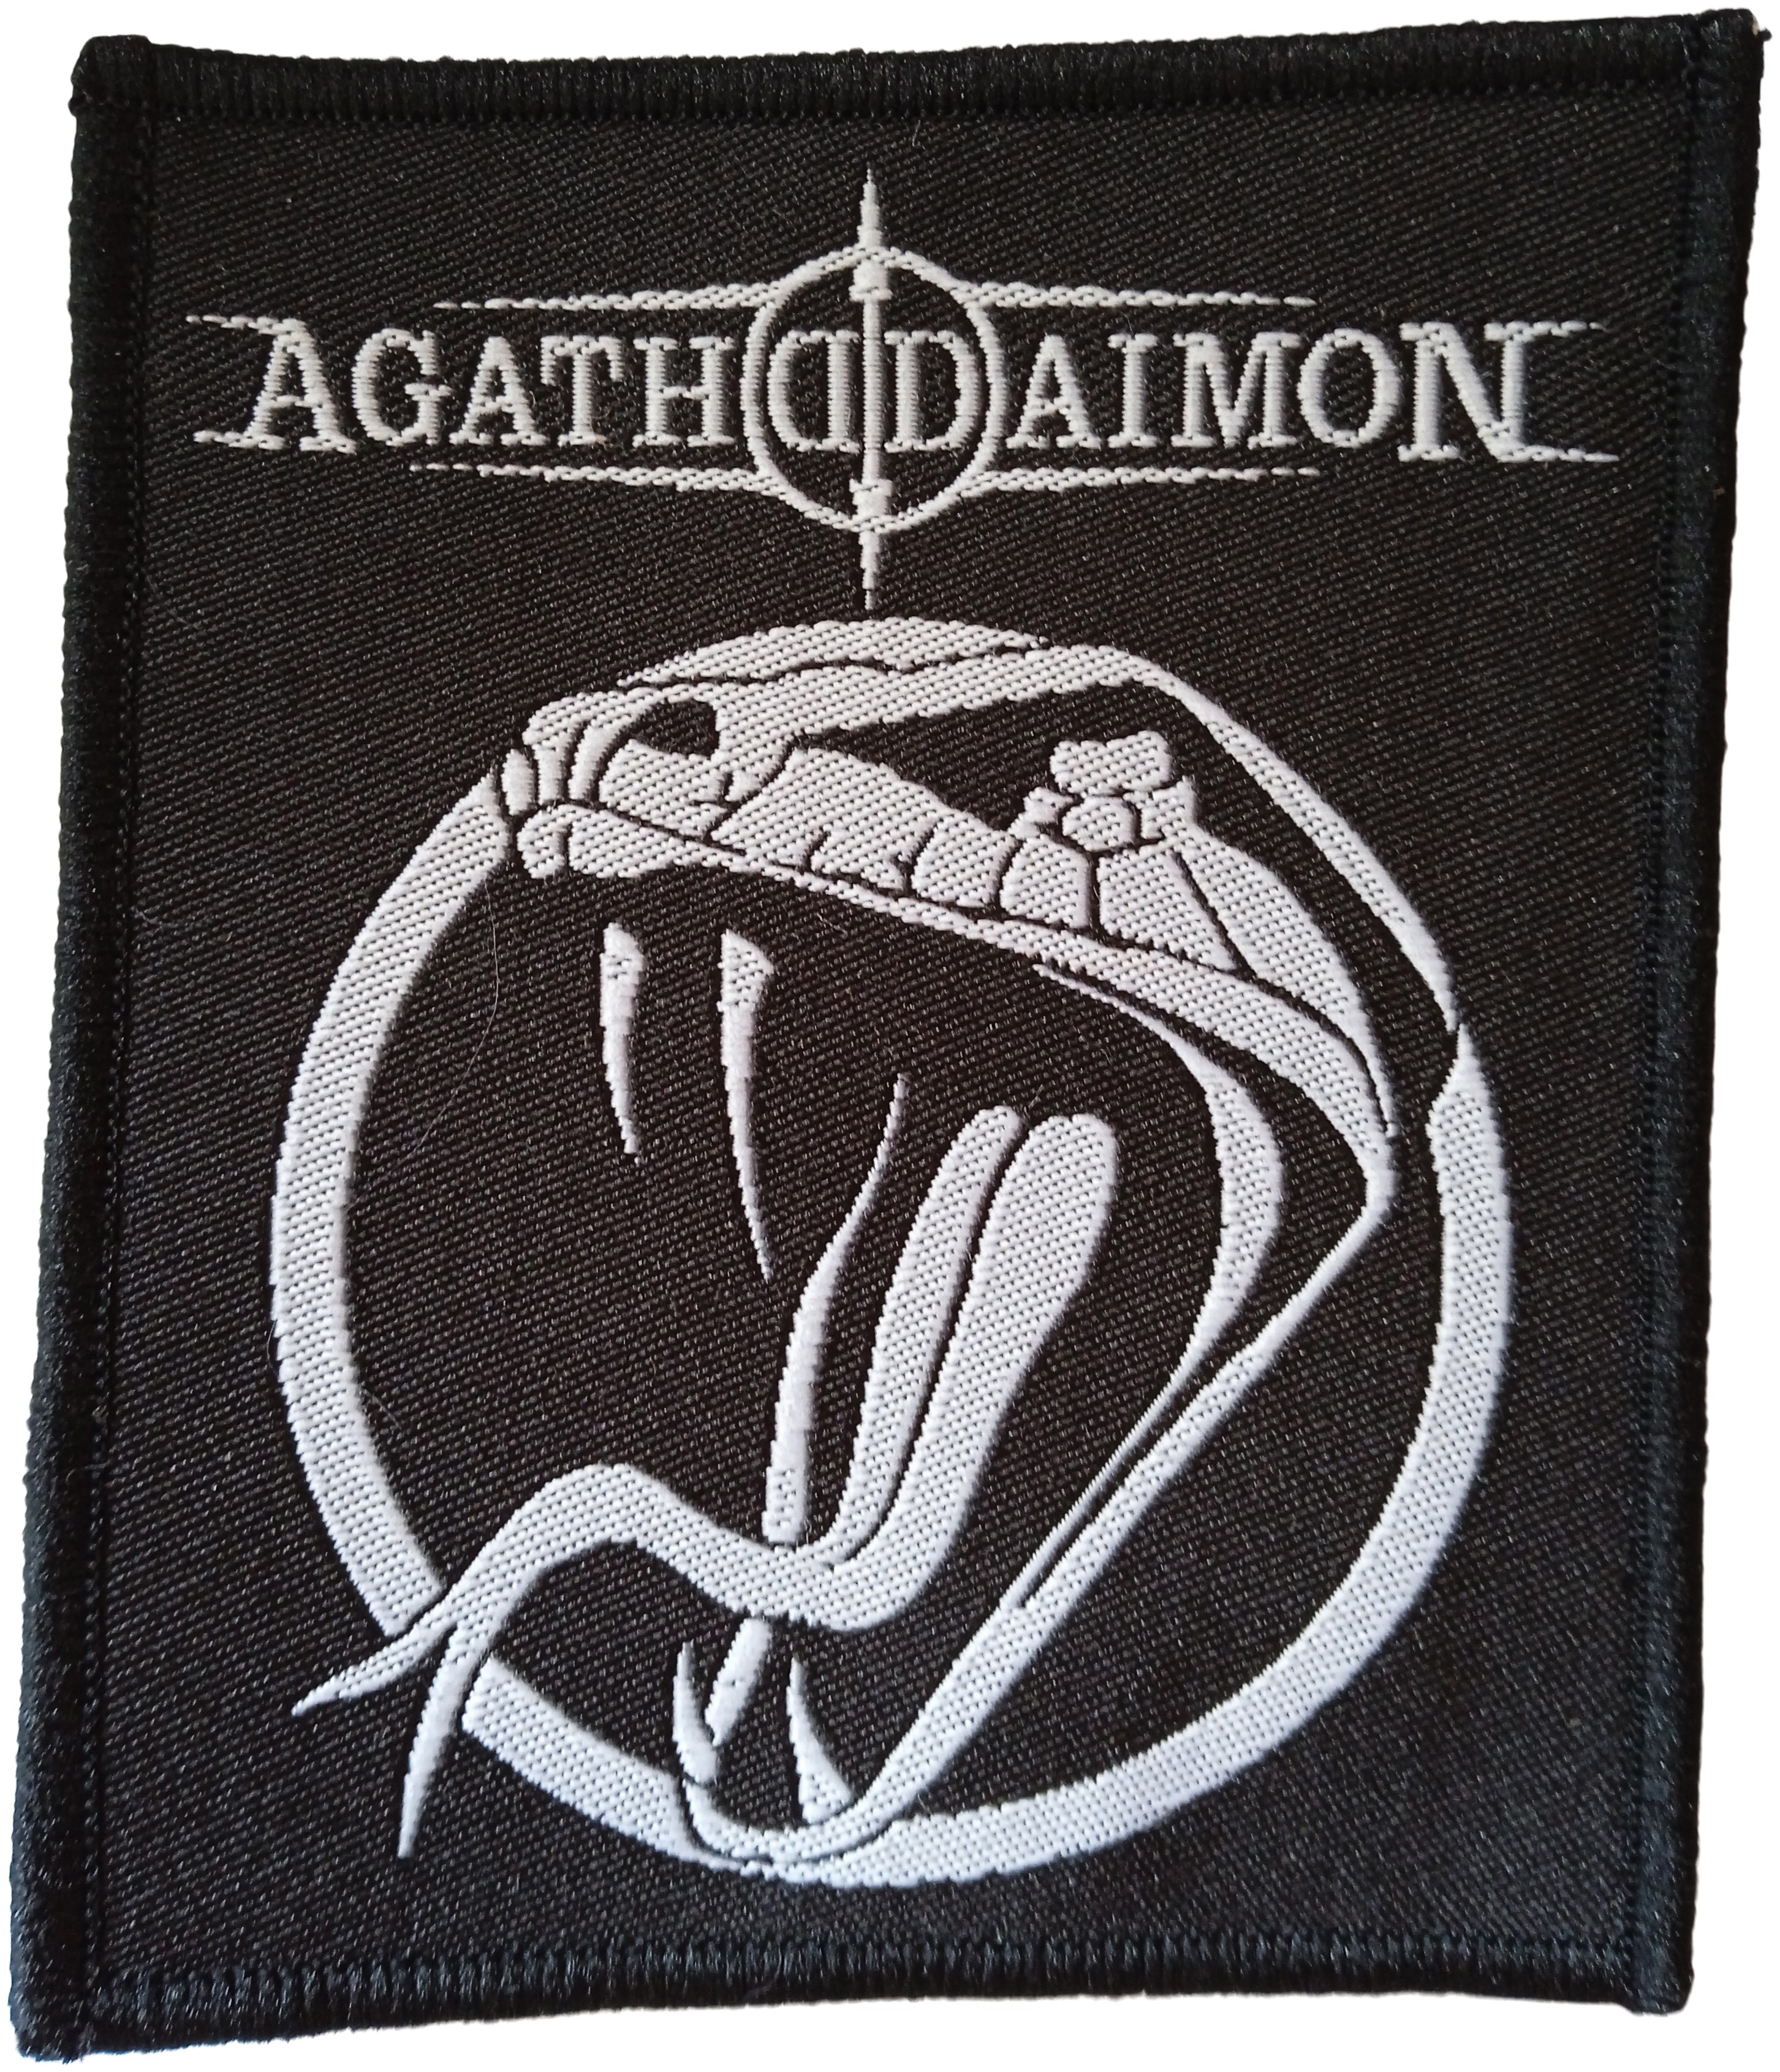 Agathodaimon - Reptile